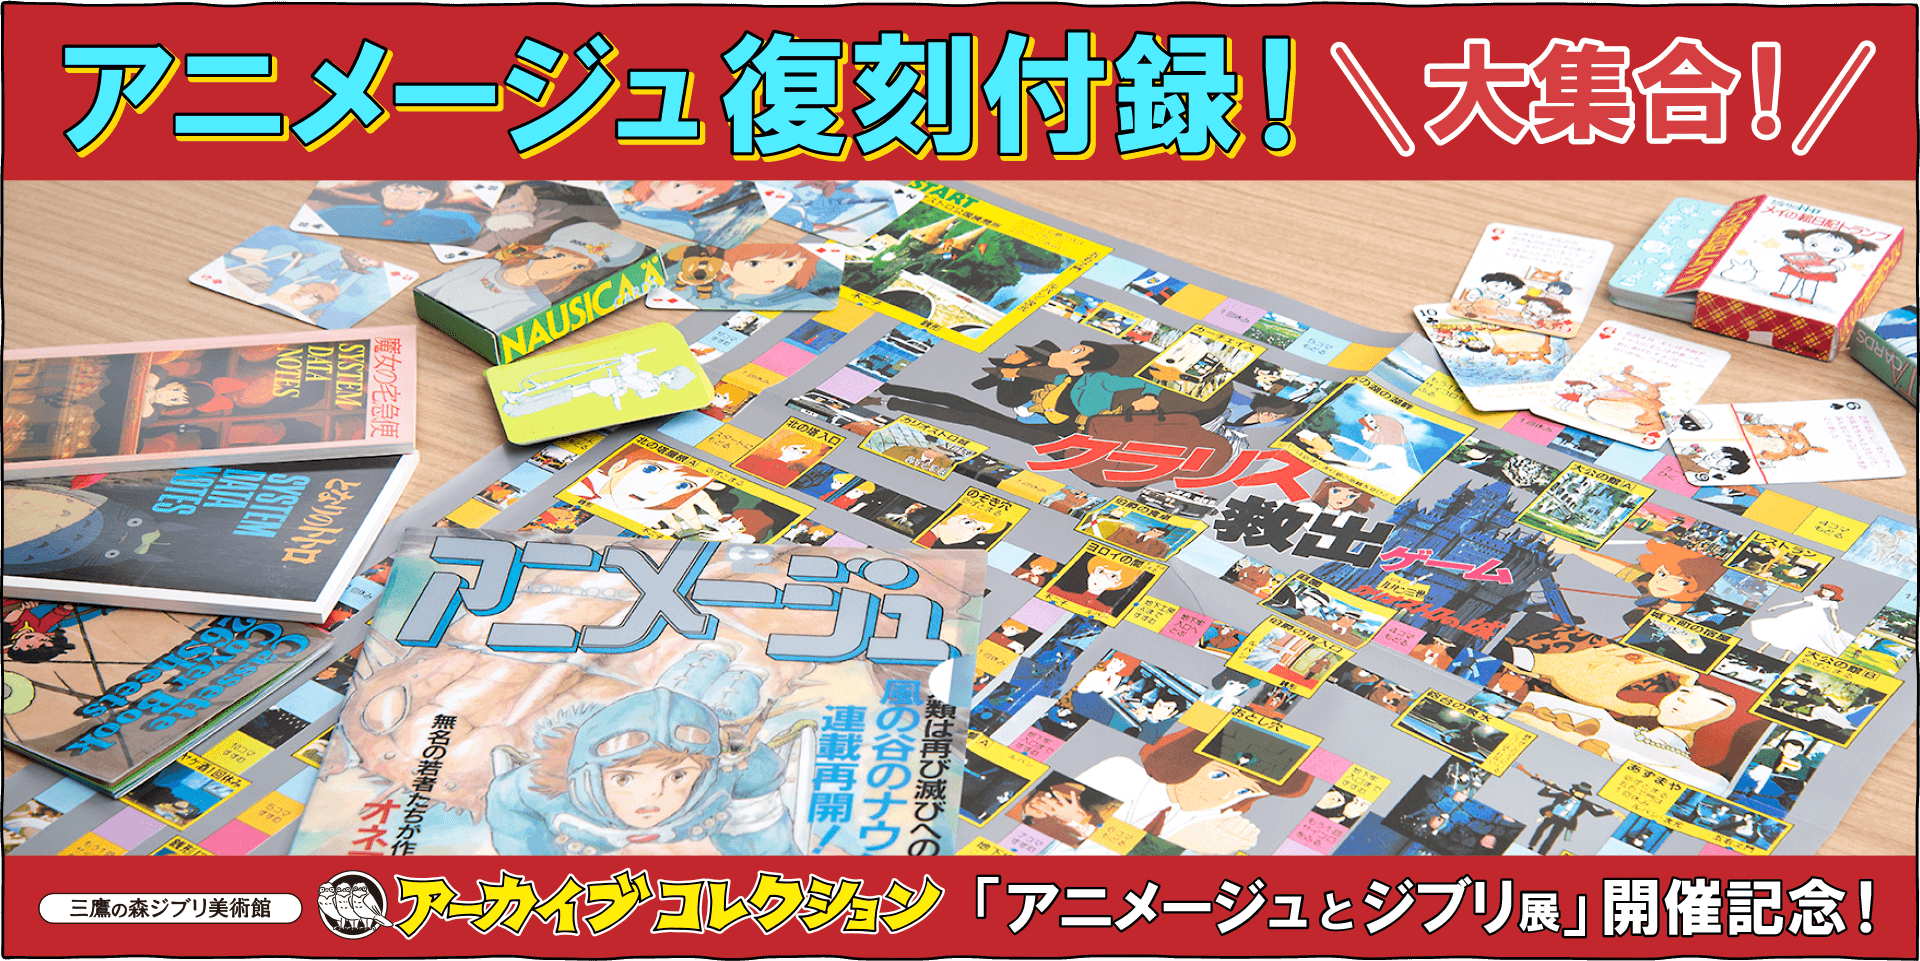 かつて鈴木プロデューサーが編集を務めたアニメ雑誌、月刊「アニメージュ」の貴重な付録を復刻しました。